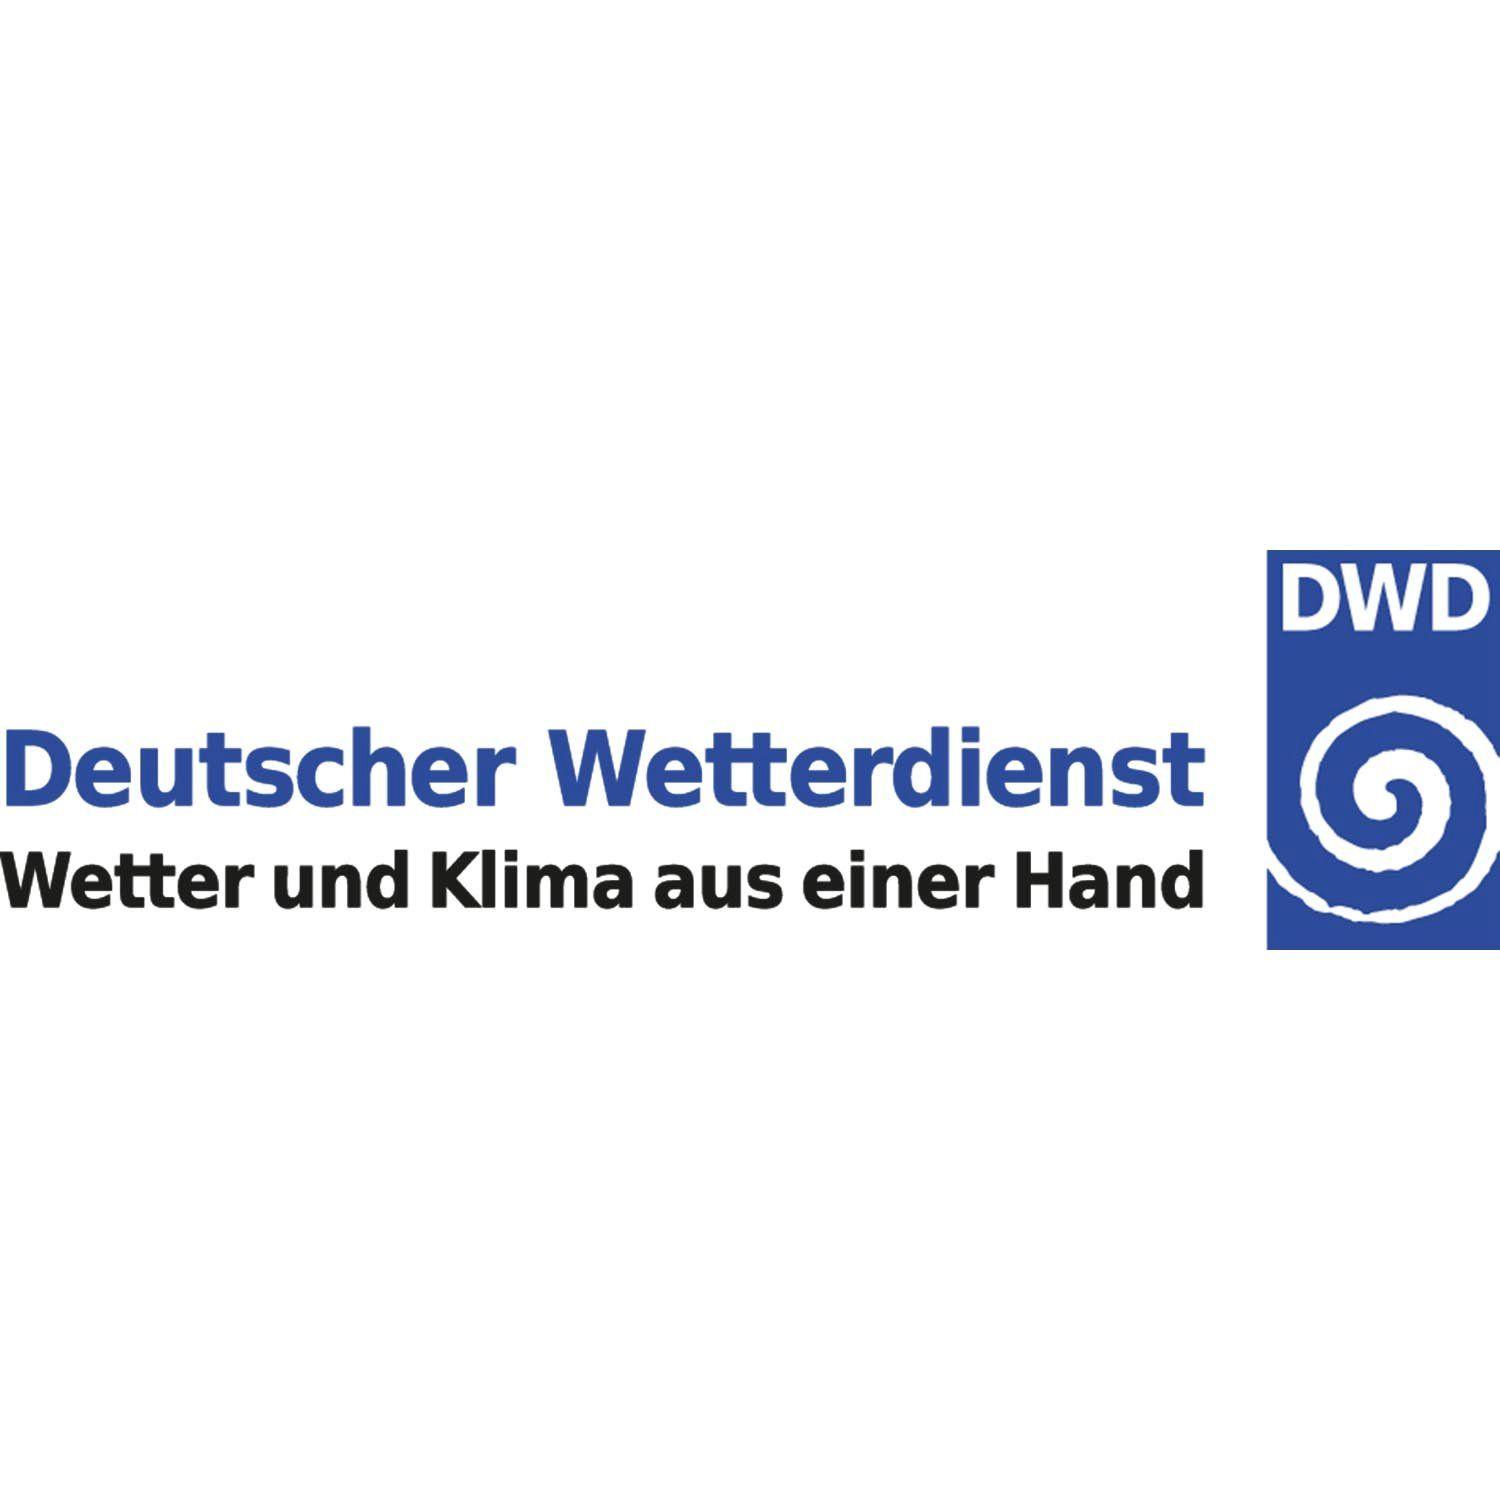 DWD Logo - RCC - Deutscher Wetterdienst - Homepage